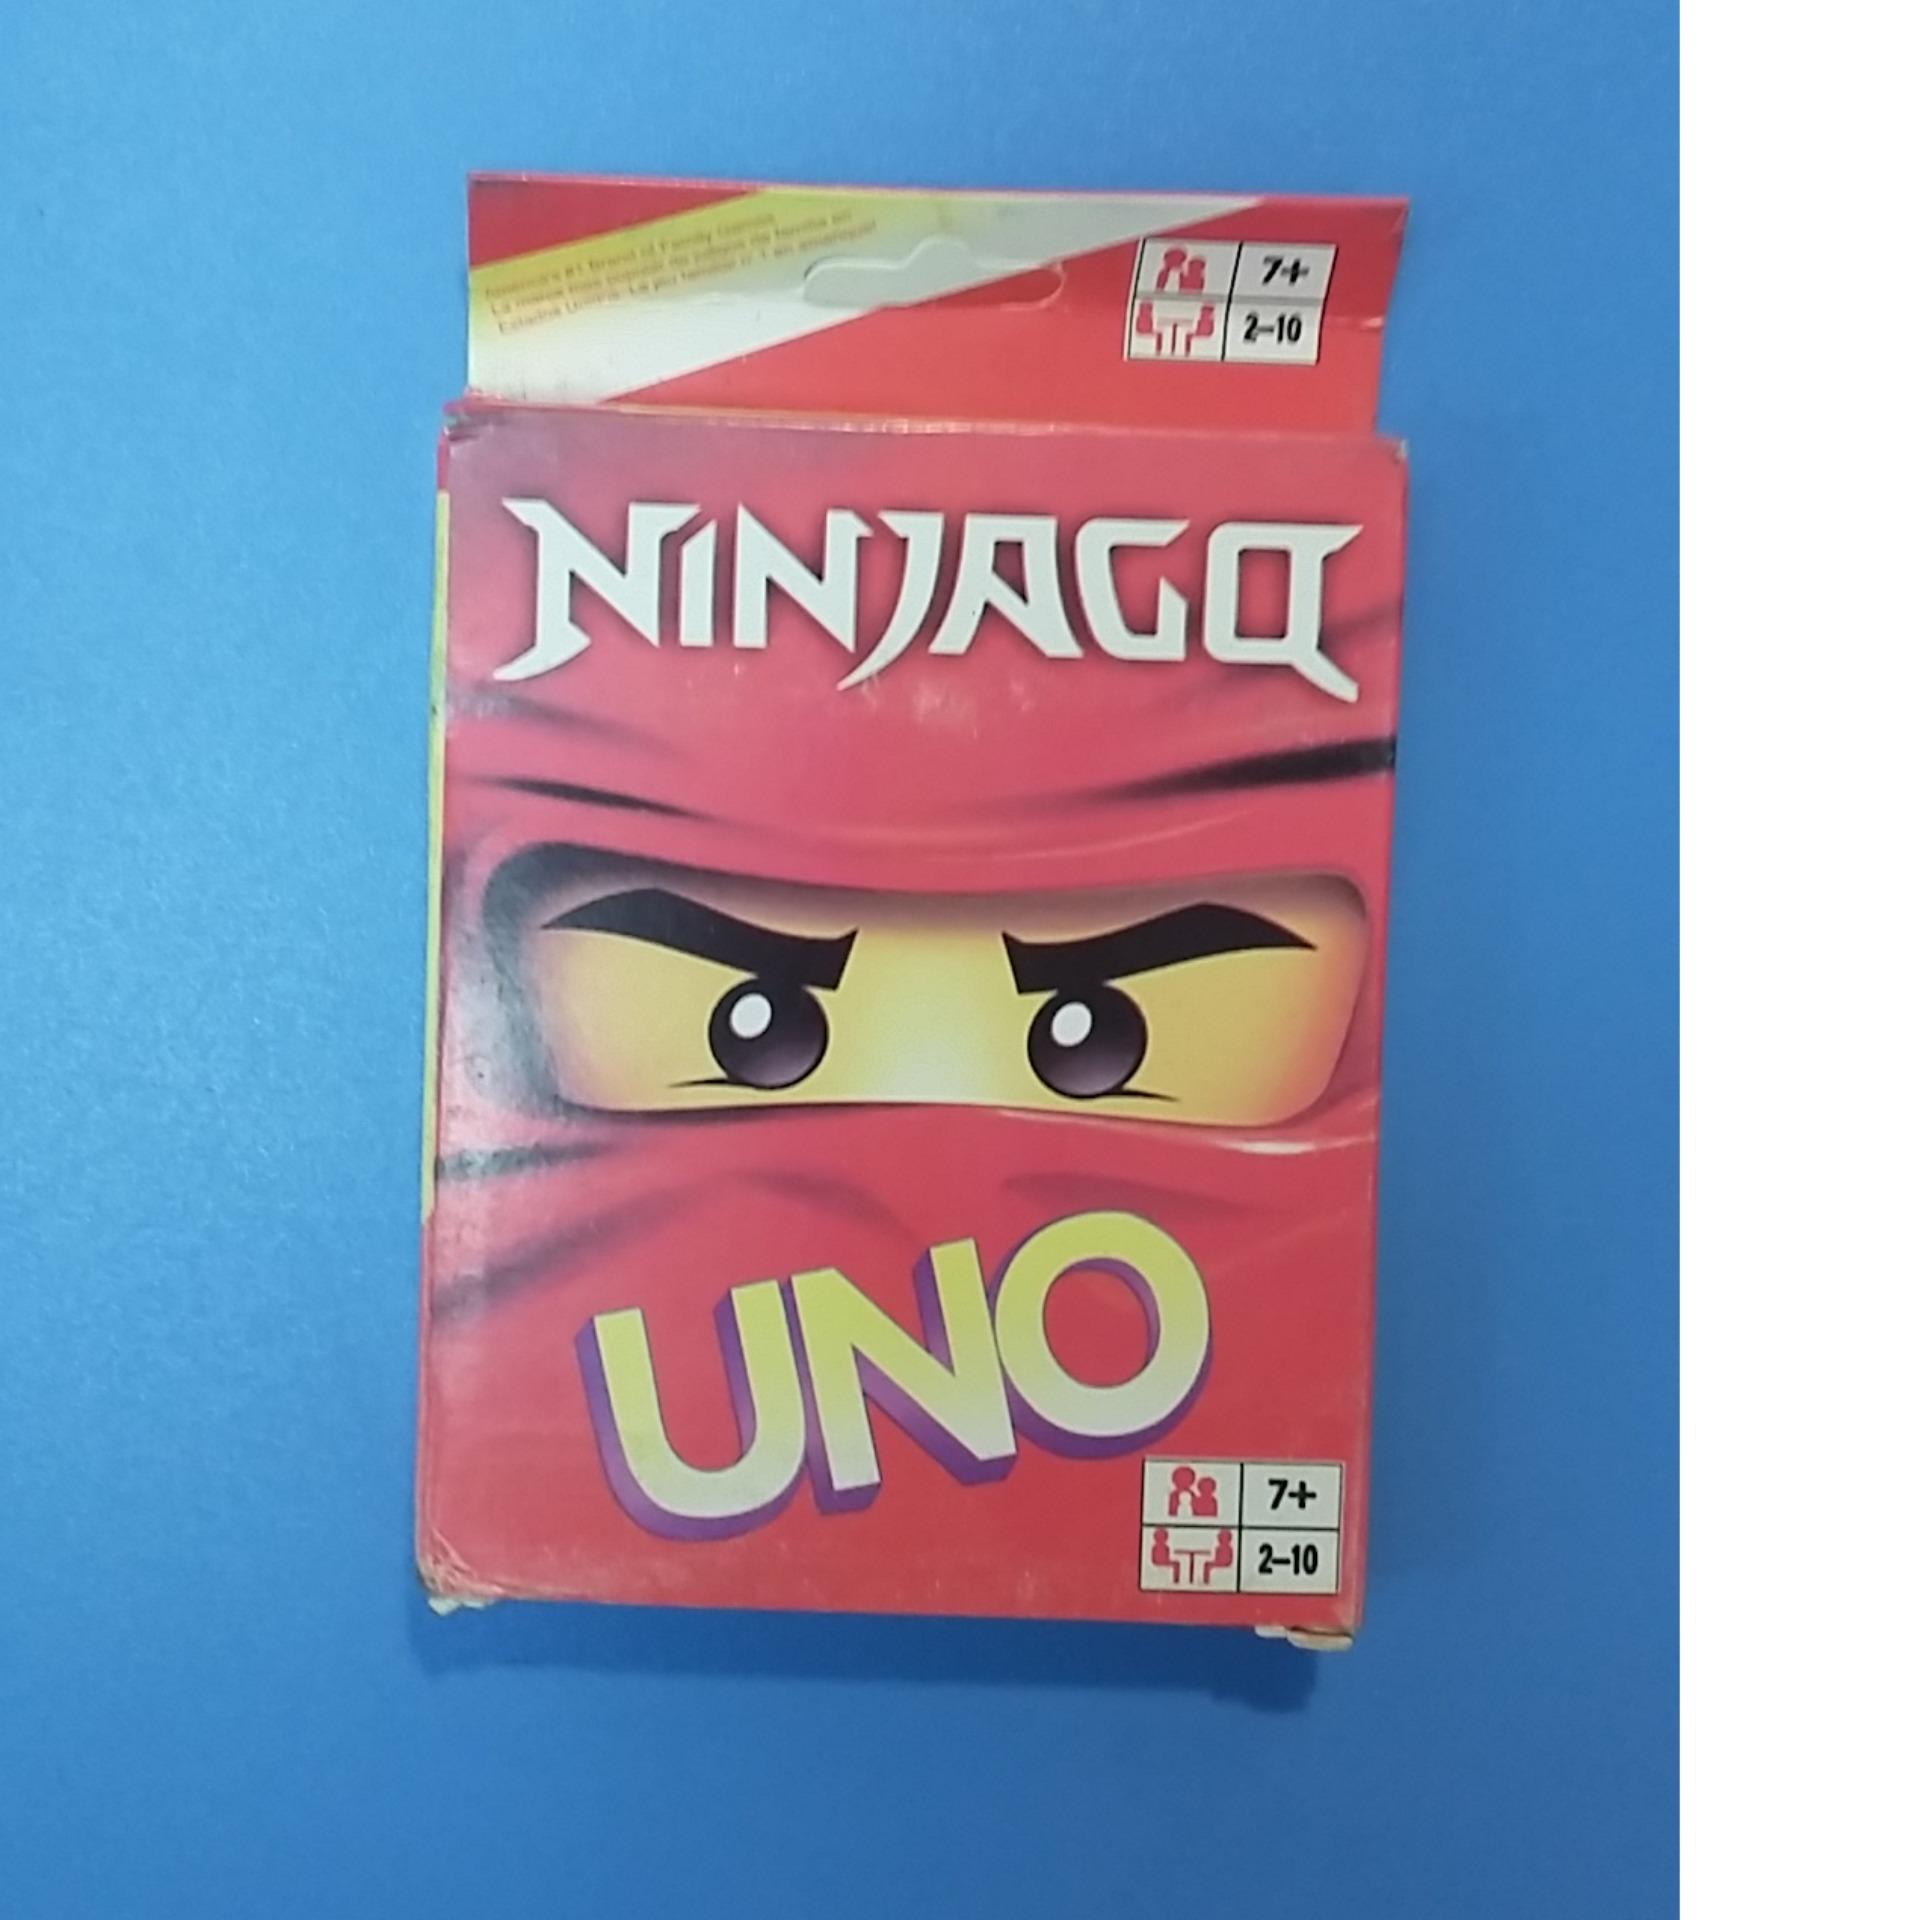 Đằng sau những chiếc bài Uno Ninjago là câu chuyện về những anh hùng, những trận đấu đầy kịch tính. Hãy cùng trải nghiệm trò chơi Uno với bộ thẻ bài Ninjago đầy bí ẩn và hấp dẫn. Xem hình ảnh để khám phá về bộ thẻ Uno Ninjago.